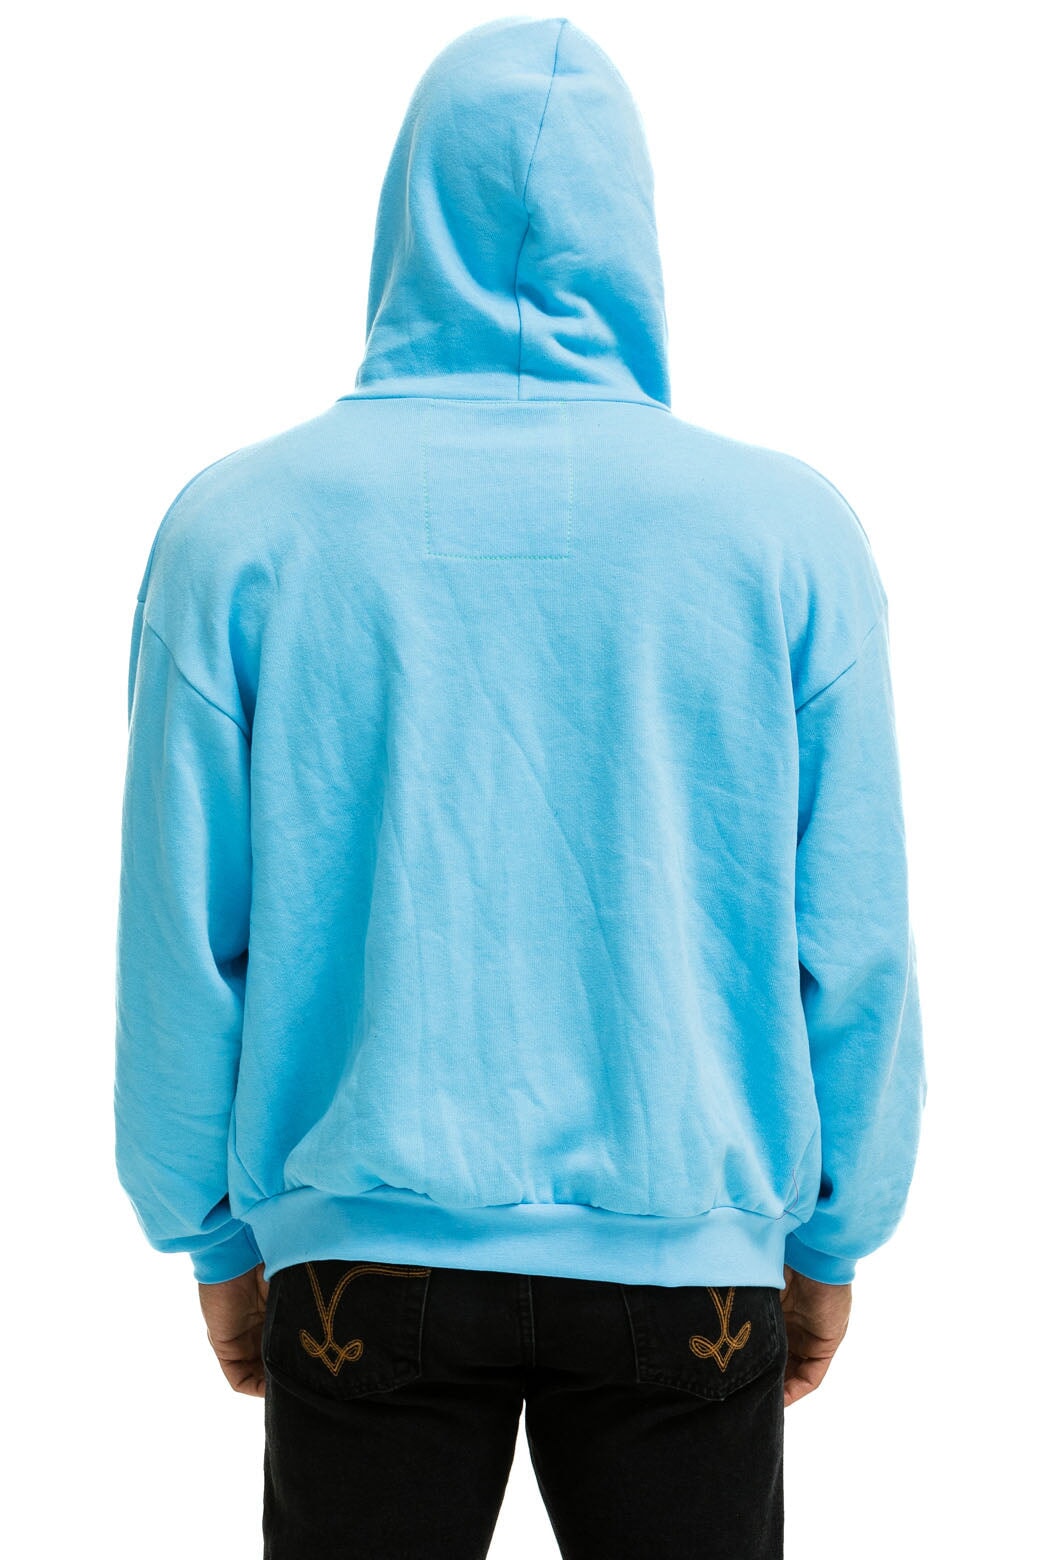 Wholesale Light Blue Hooded Denim Jacket Manufacturer USA,UK